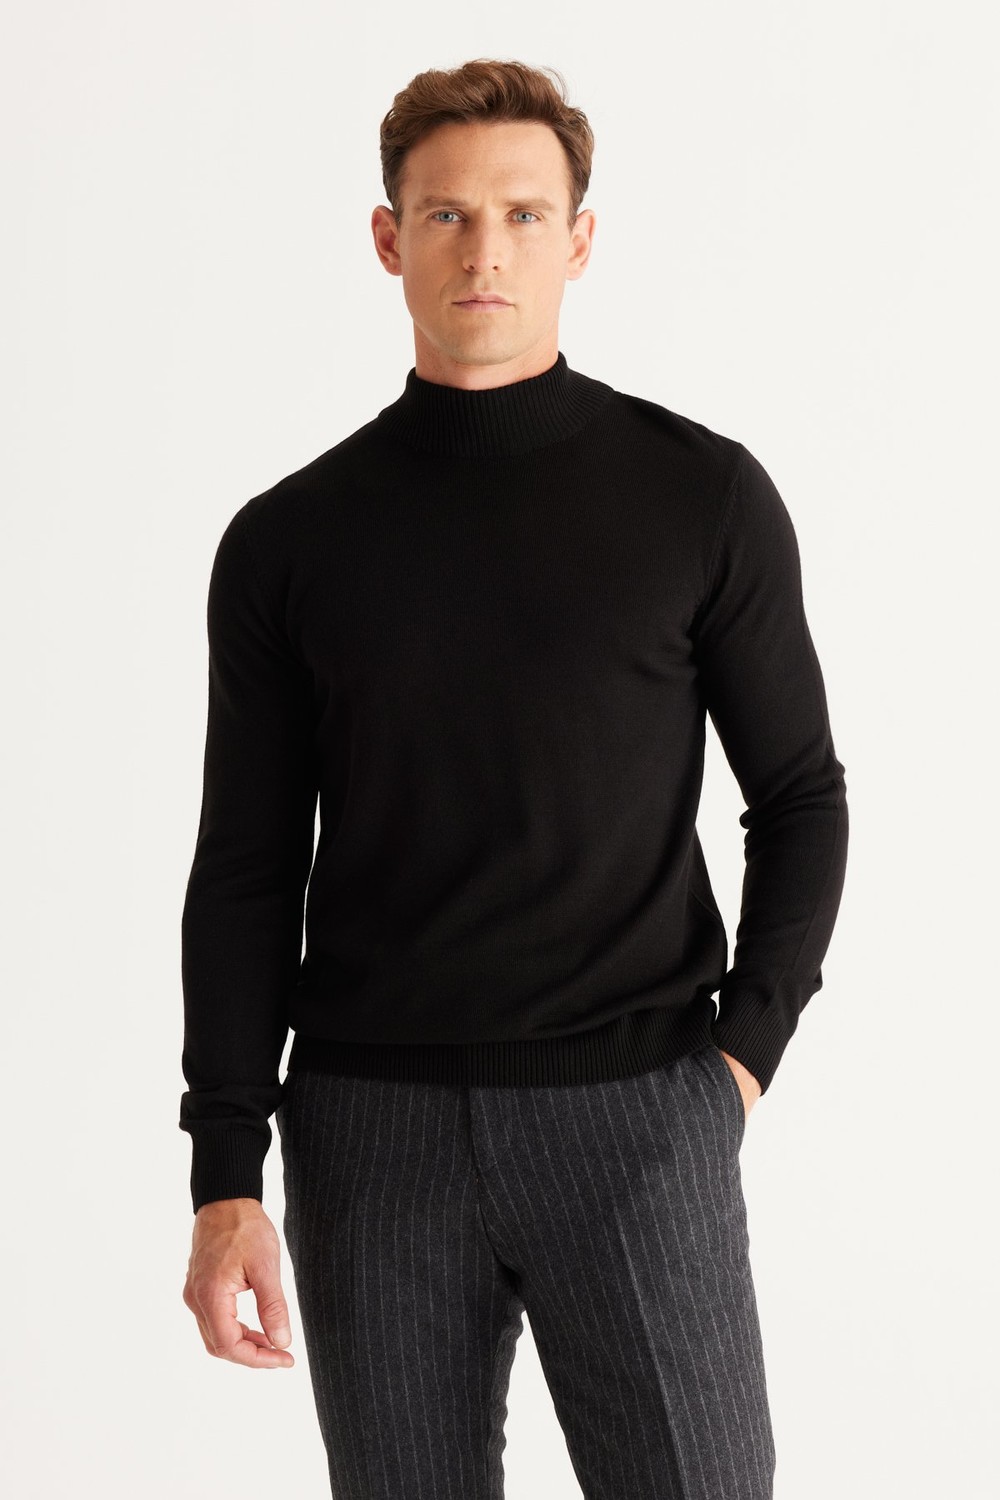 ALTINYILDIZ CLASSICS Men's Black Anti-Pilling Standard Fit Normal Cut Half Turtleneck Knitwear Sweater.